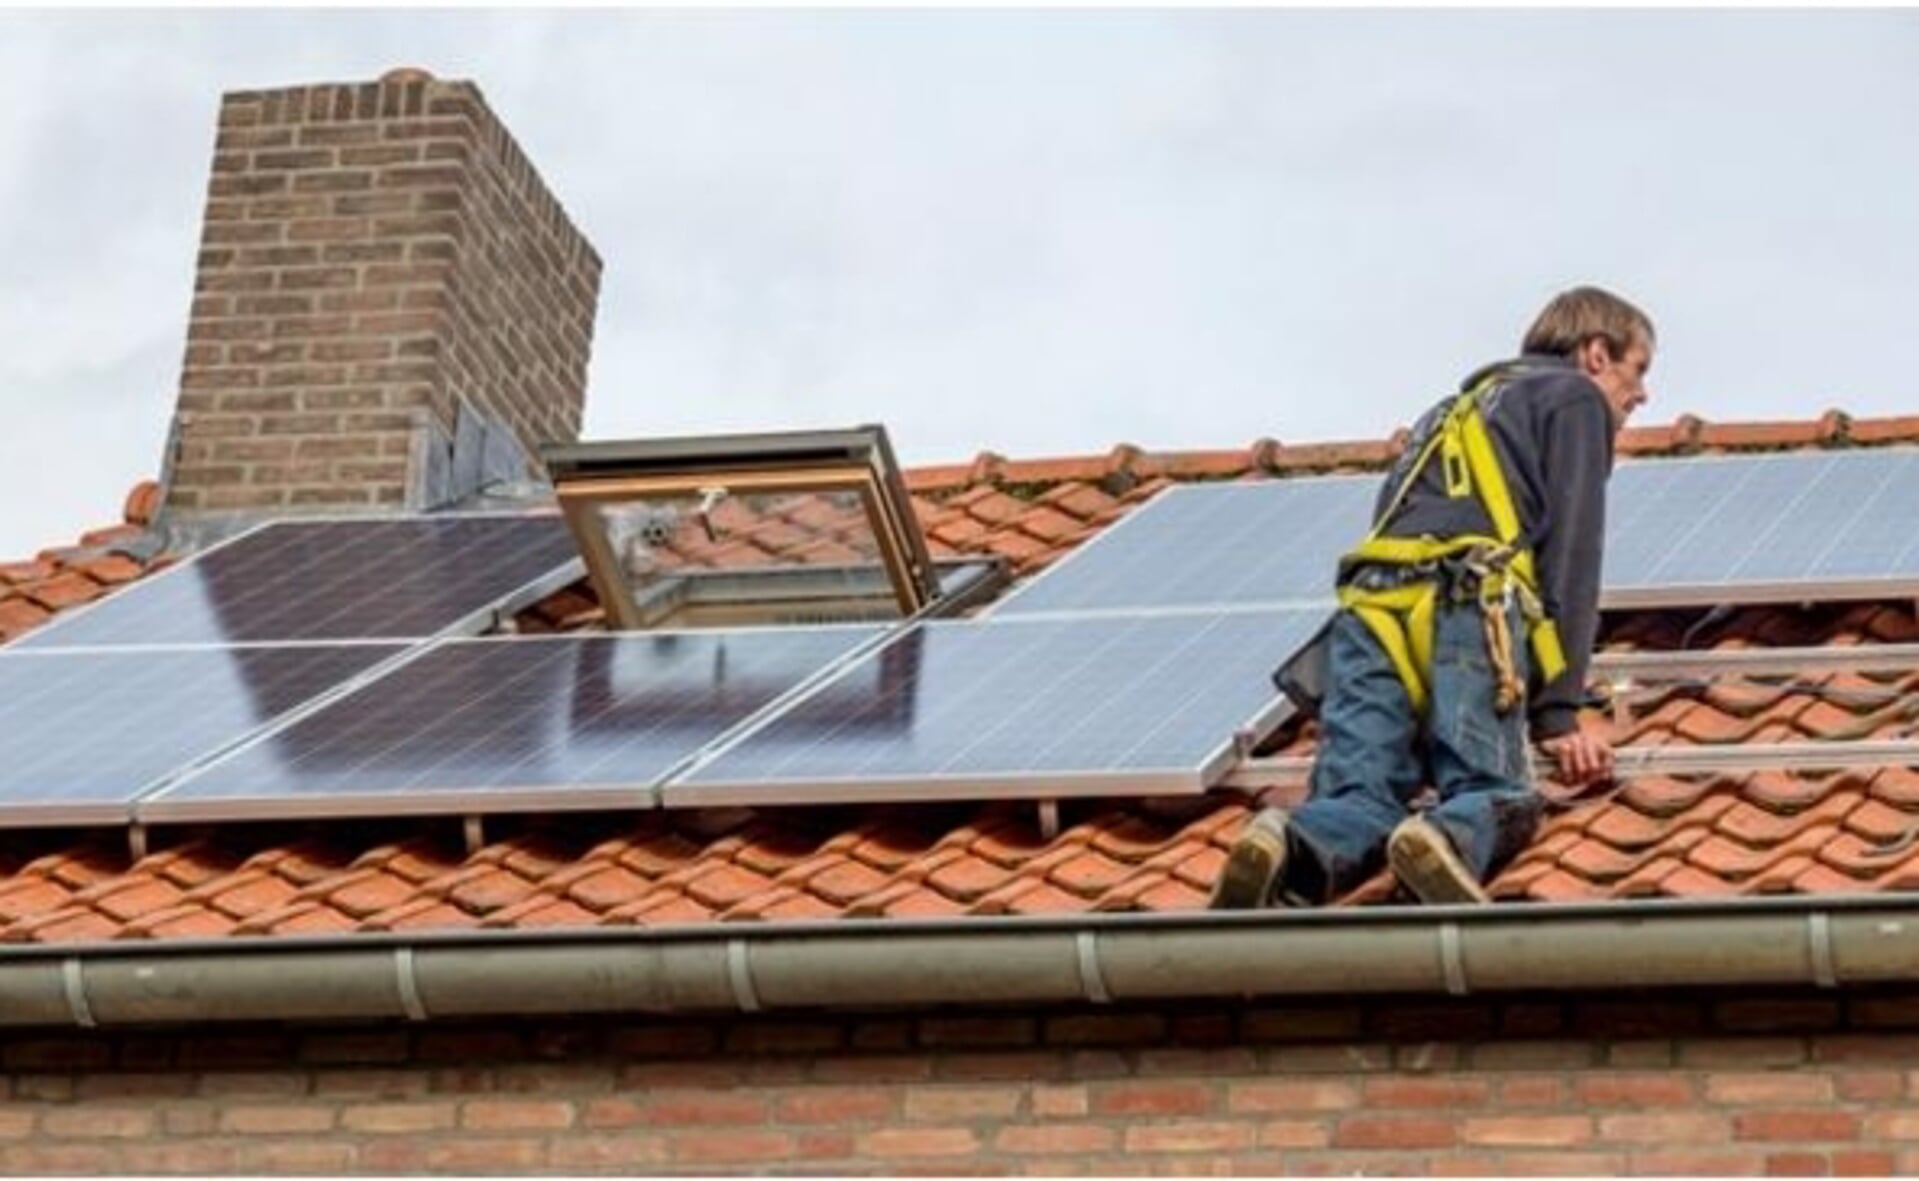 Steeds meer huurhuizen worden voorzien van zonnepanelen op het dak. Toch ligt energiearmoede op de loer omdat de verduurzaming van koopwoningen veel sneller gaat.